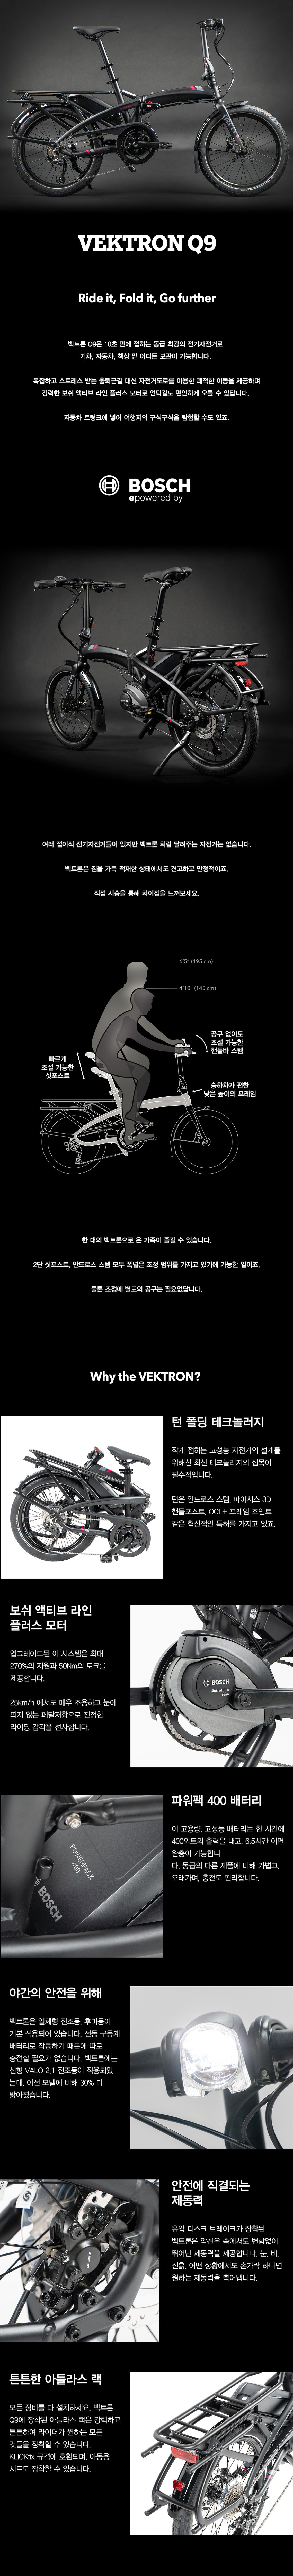 vektron_01_190245.jpg